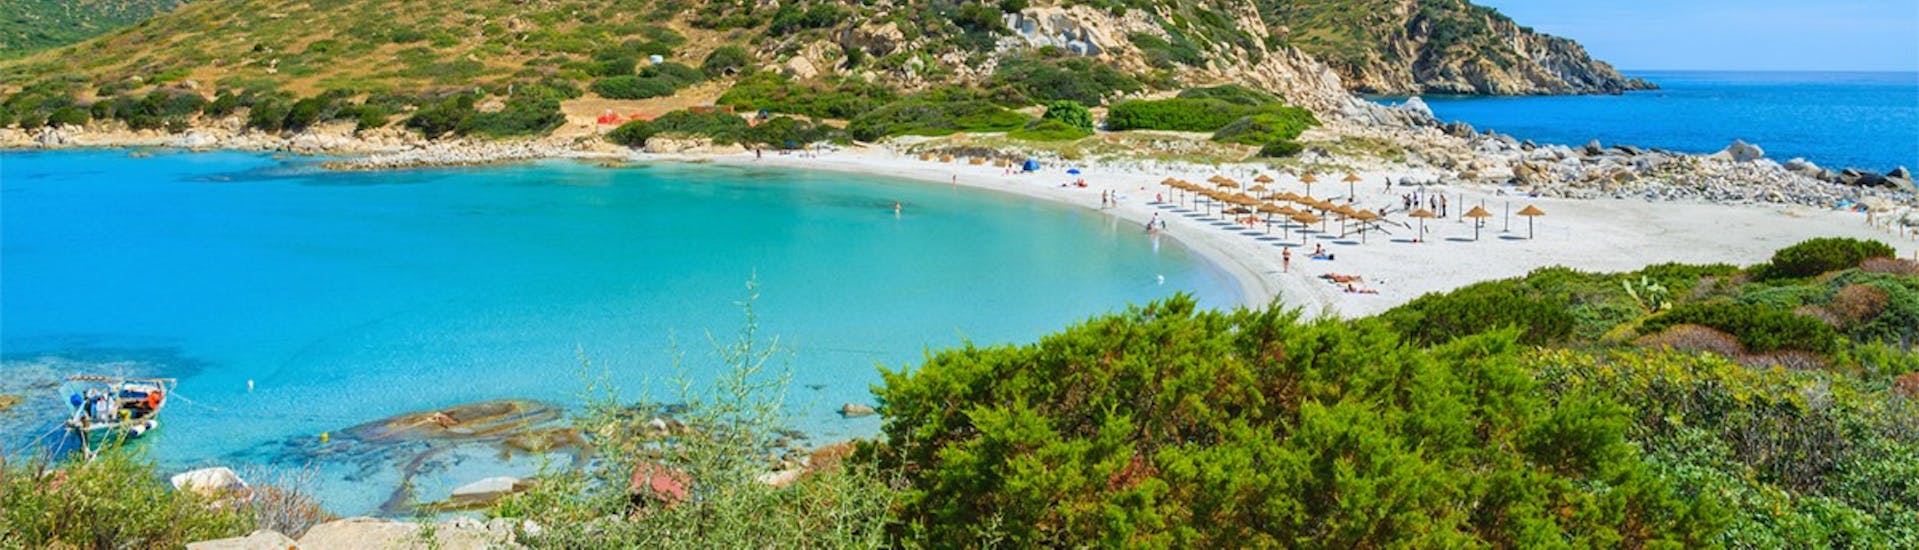 Blick auf einen Strand bei Villasimius mit türkisfarbenem Wasser und weißem Sand bei dem RIB Bootsverleih in Villasimius (bis 7 Personen).